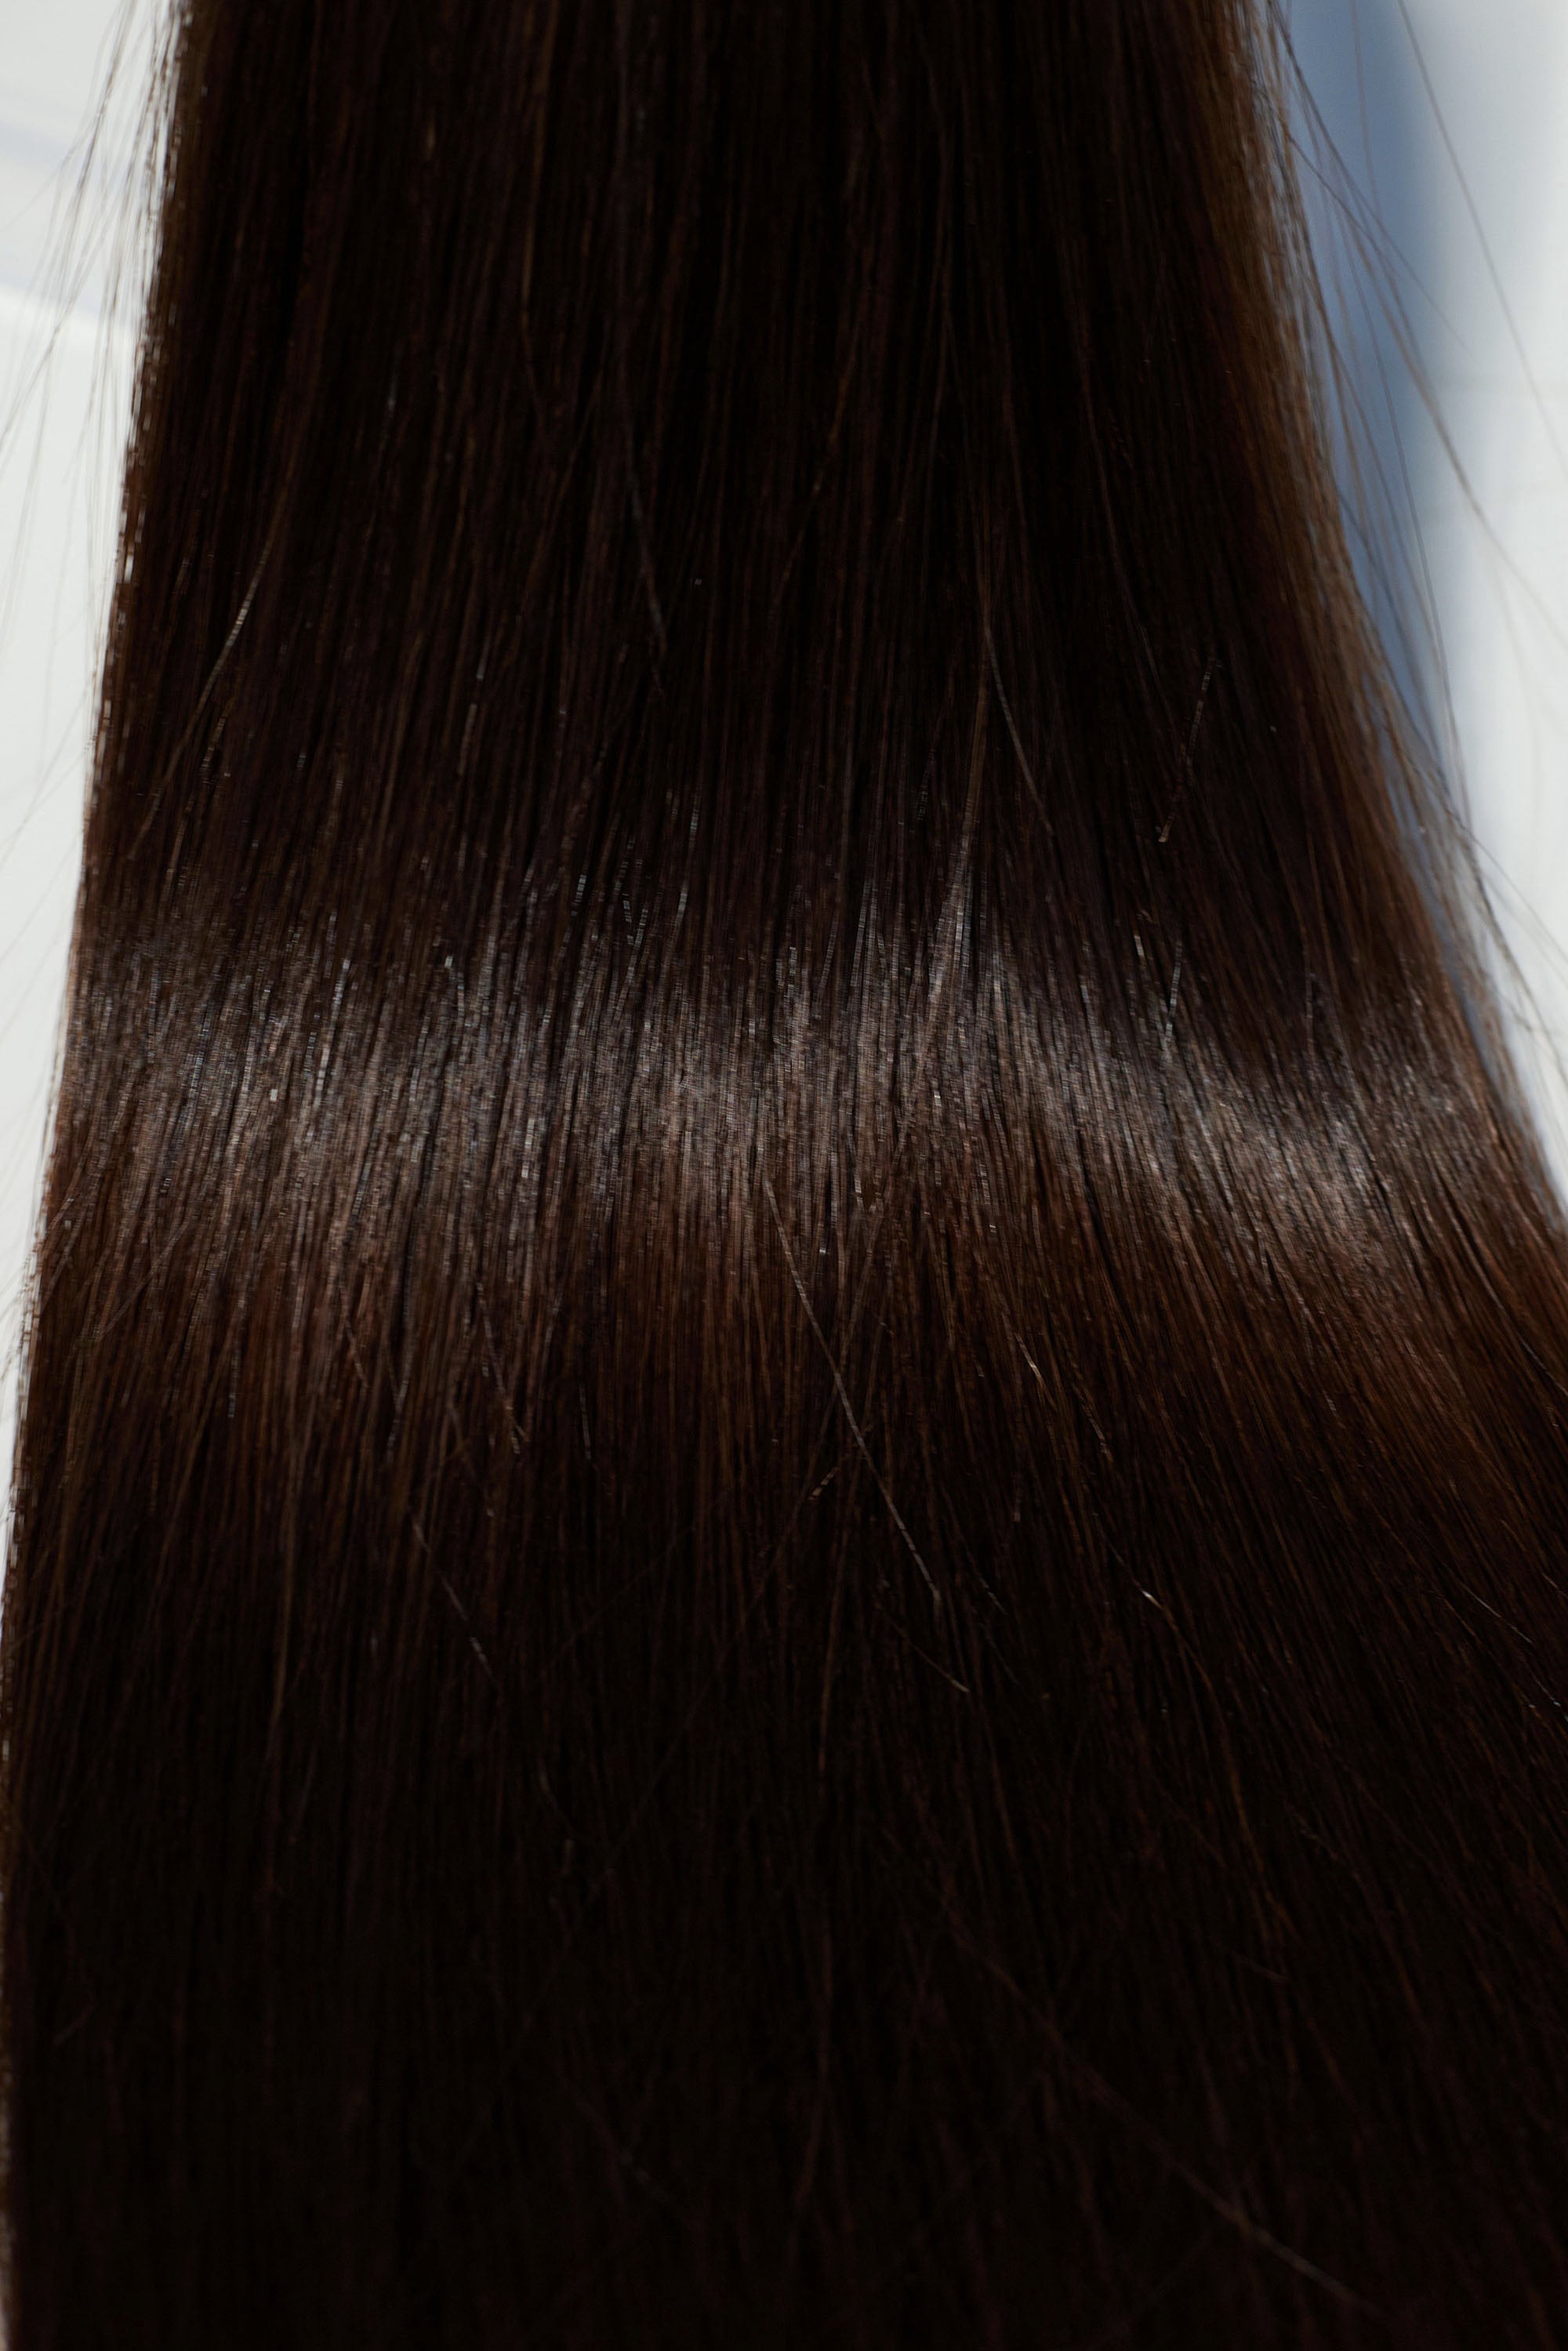 Behair professional Keratin Tip "Premium" 20" (50cm) Natural Straight Dark Coffee Brown #2 - 25g (1g each pcs) hair extensions